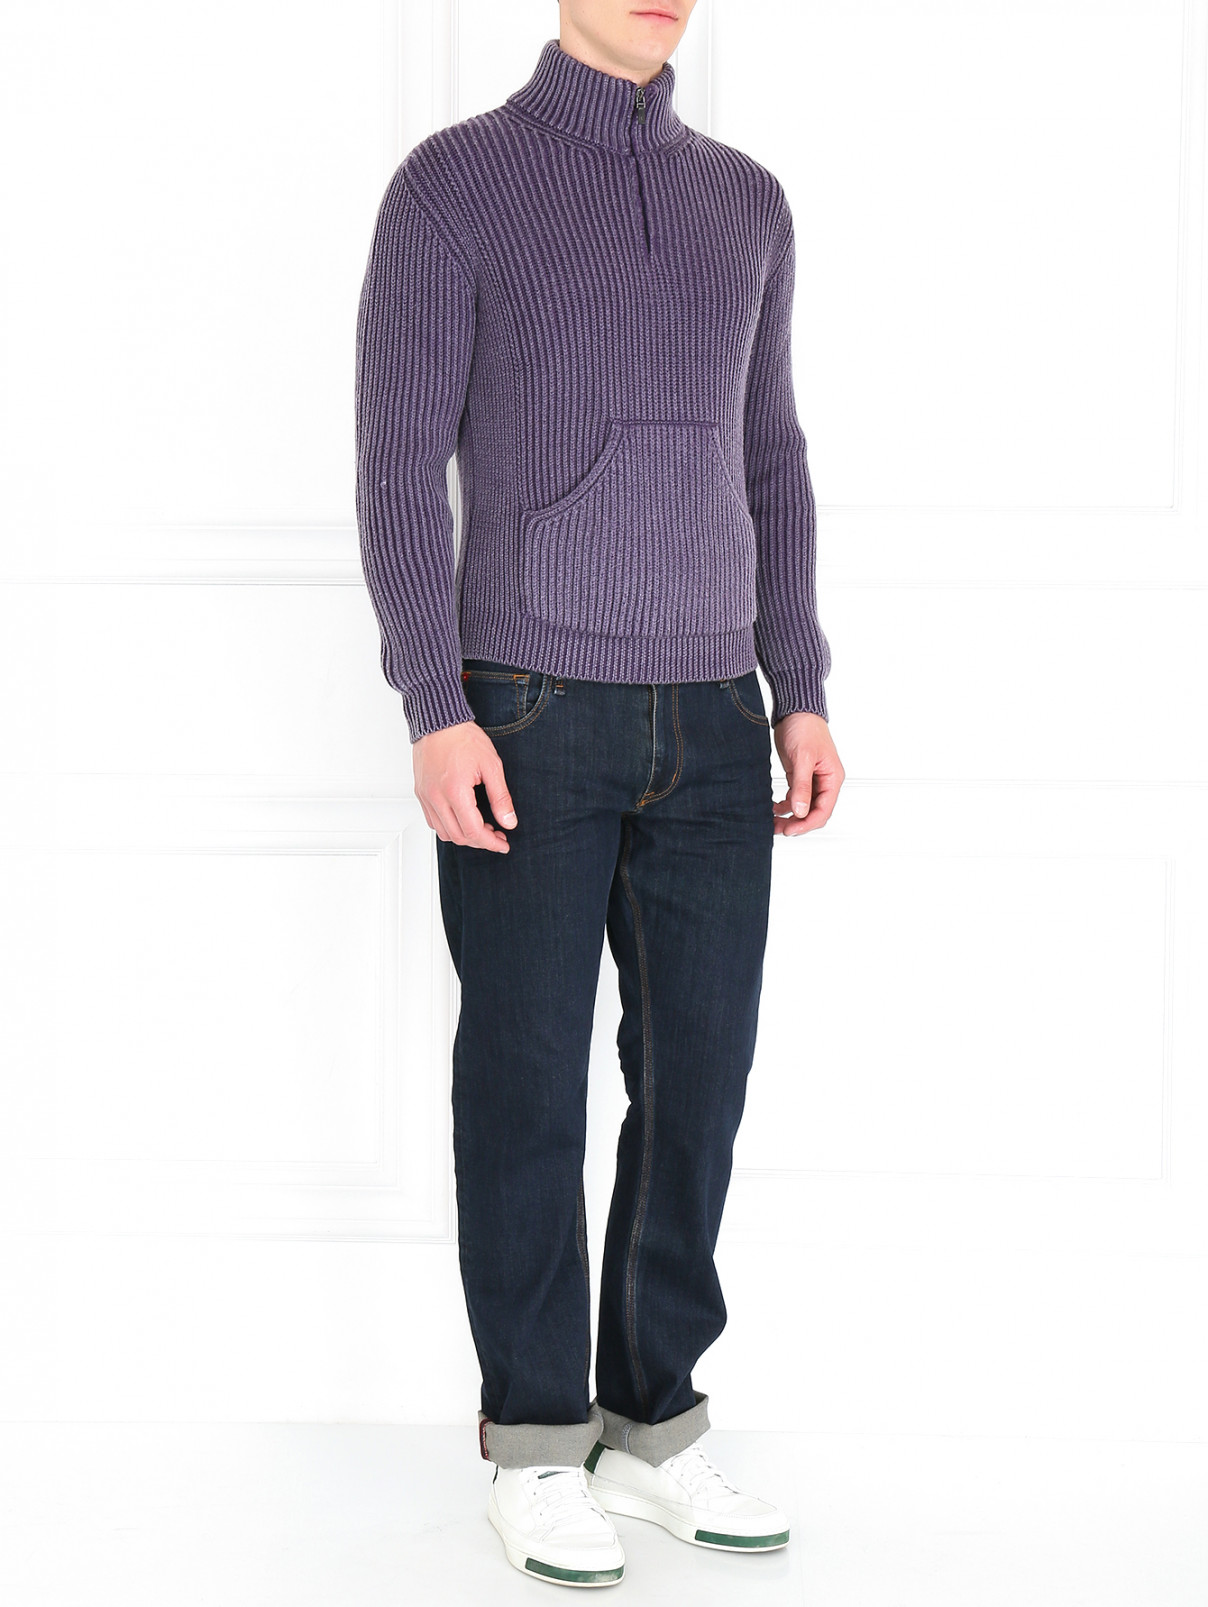 Джемпер с накладным карманом на молнии Boglioli  –  Модель Общий вид  – Цвет:  Фиолетовый